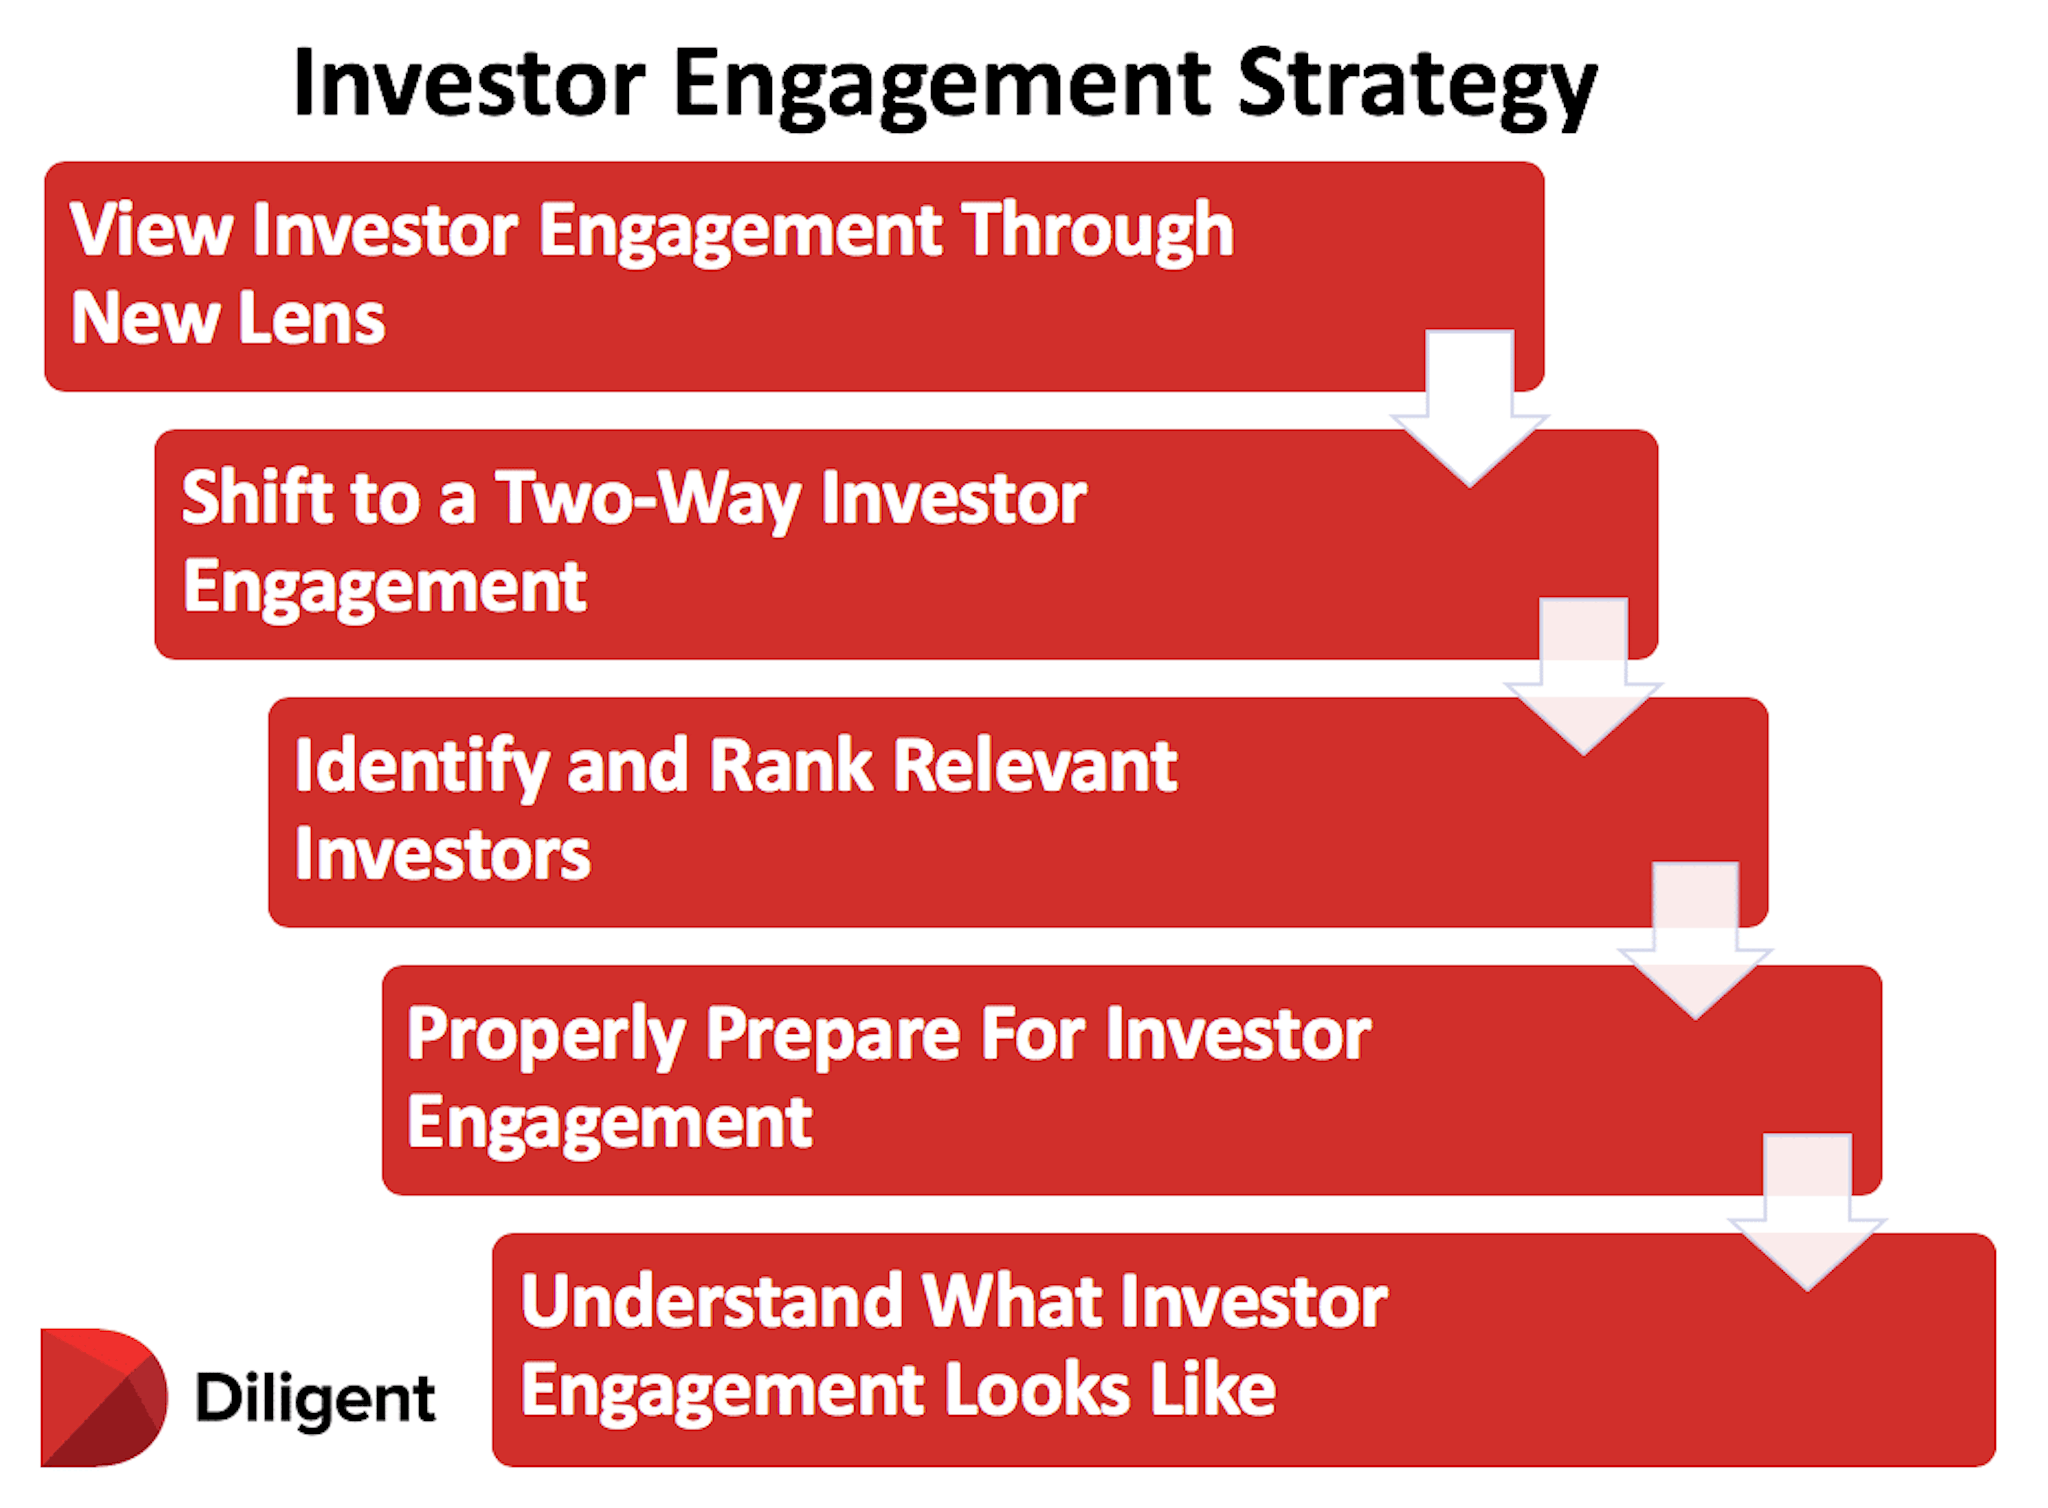 Diligent's investor engagement strategy framework